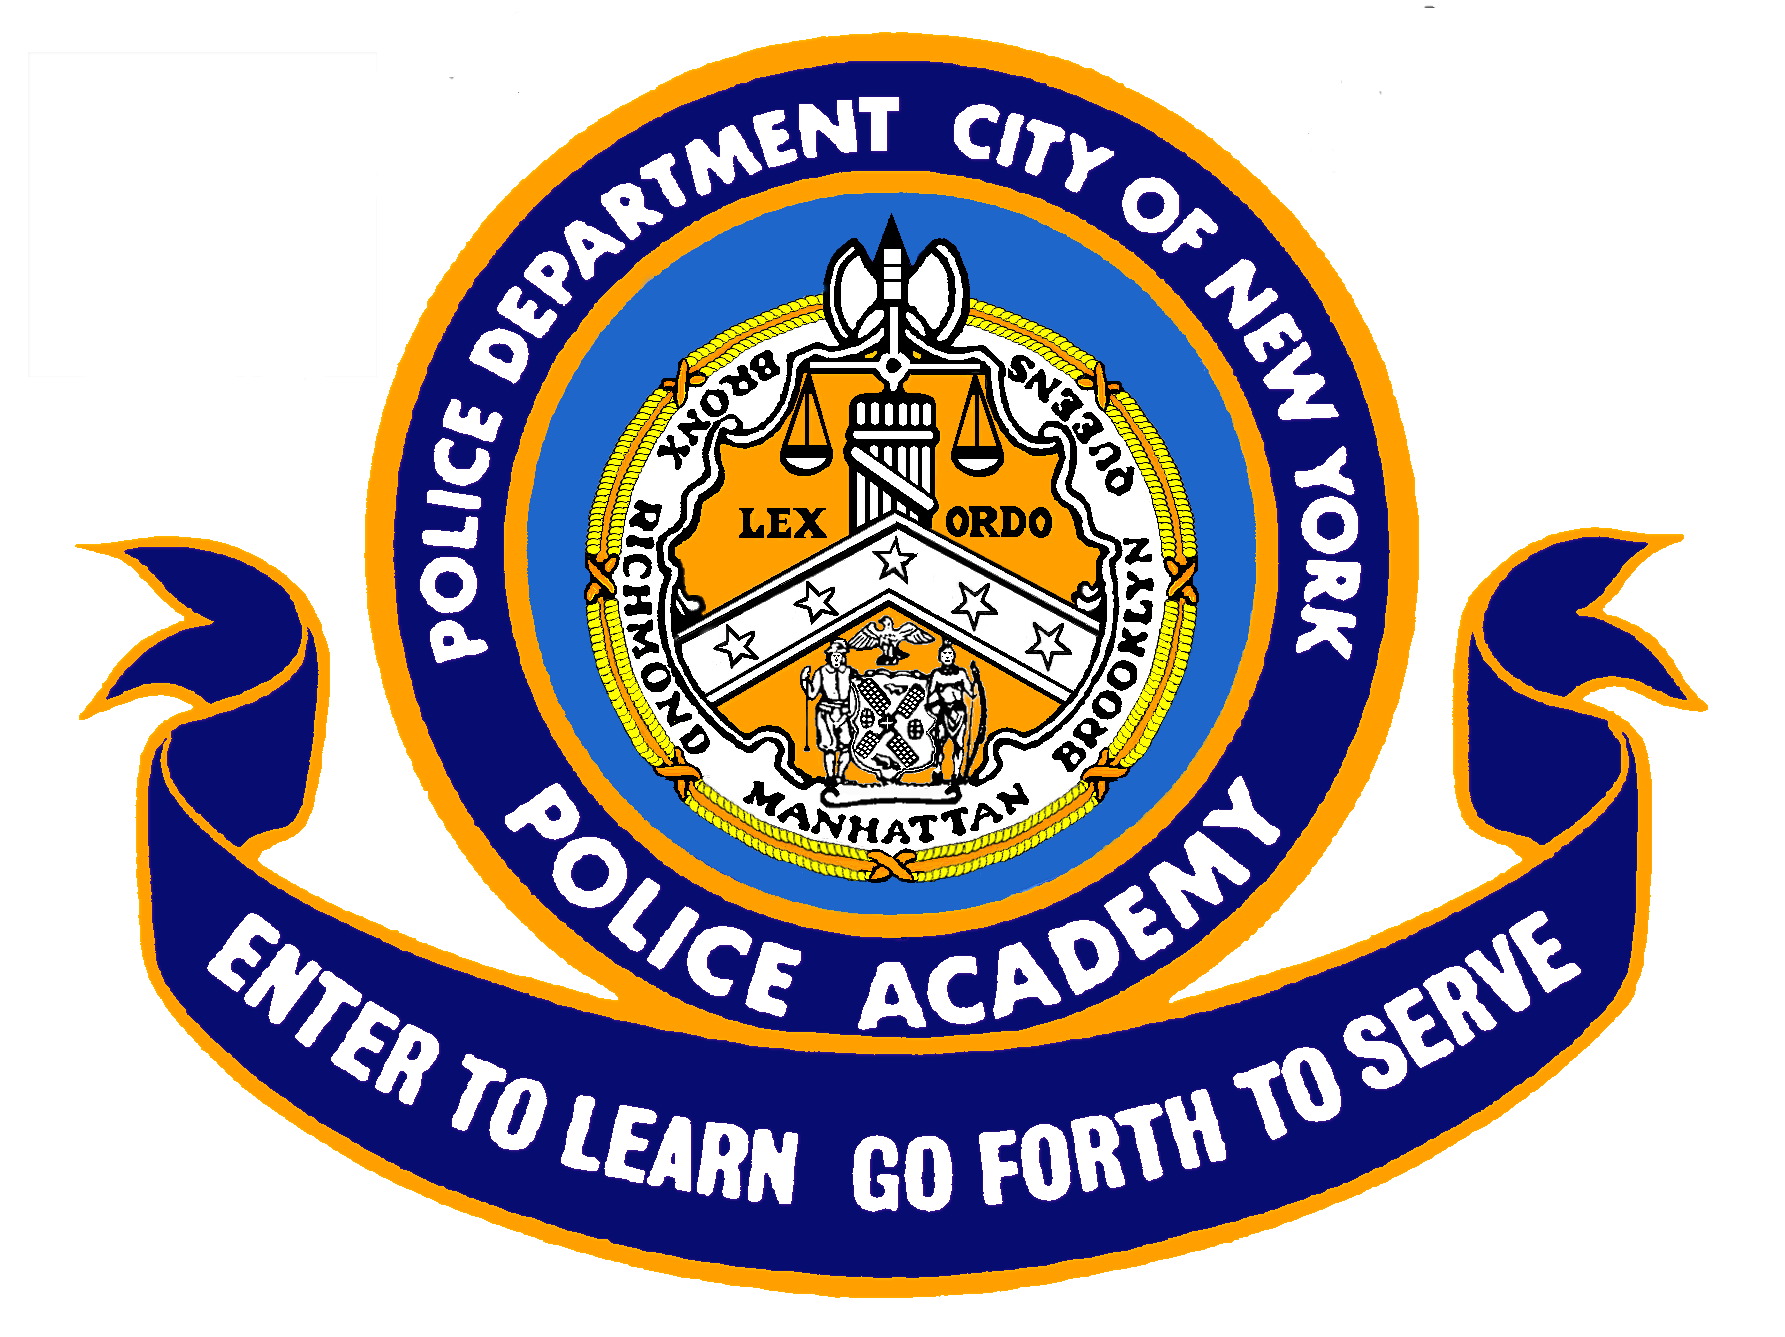 Police Academy #1